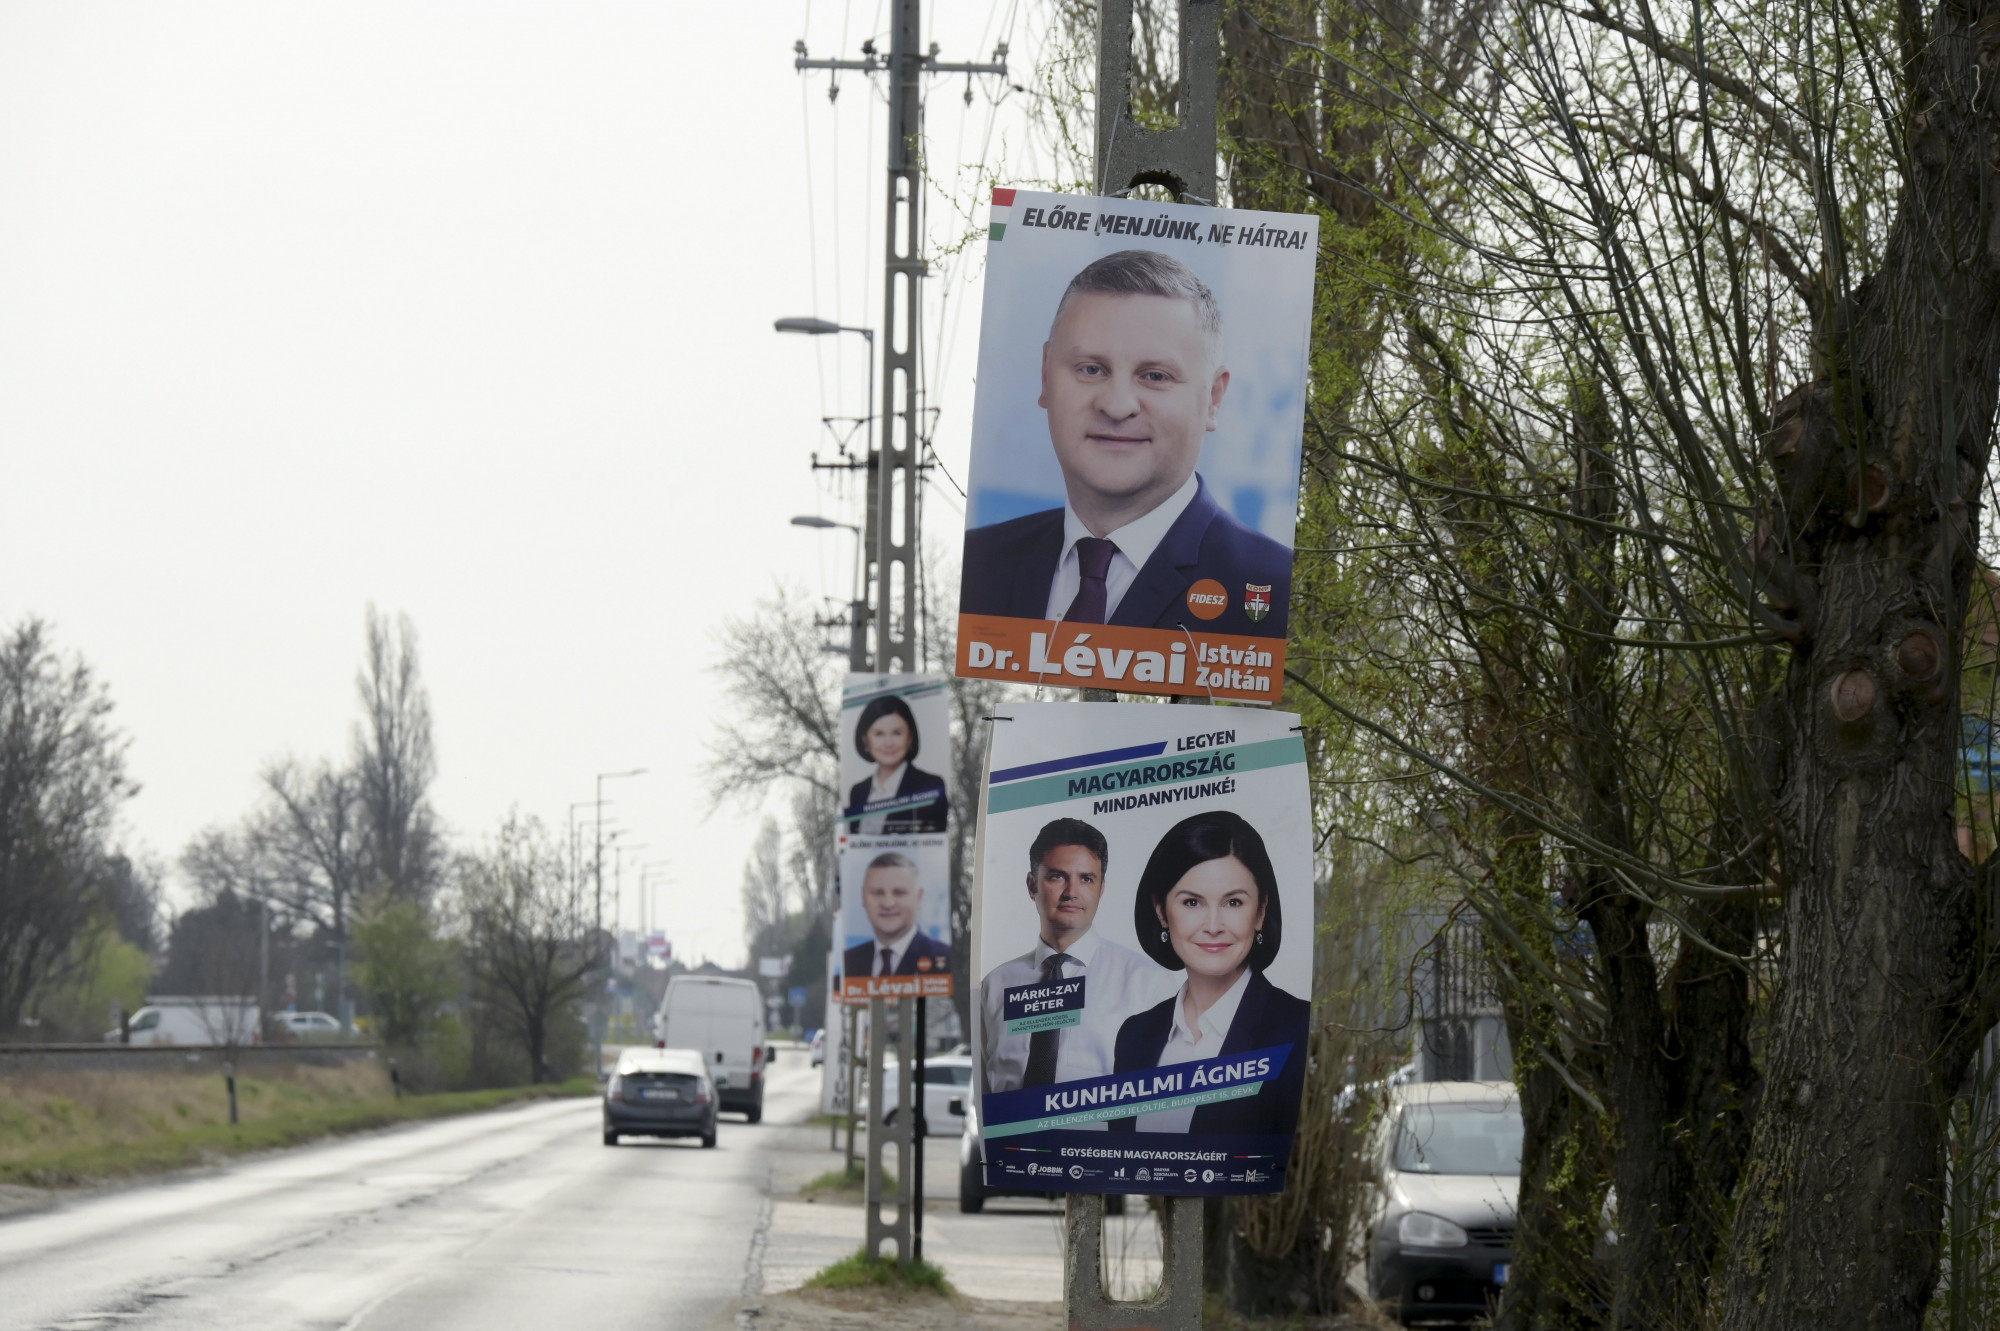 Egyből leszedte a Fidesz a XVIII. kerületi emberét, aki pénzt ajánlott a Kétfarkú Kutya Párt jelöltjének